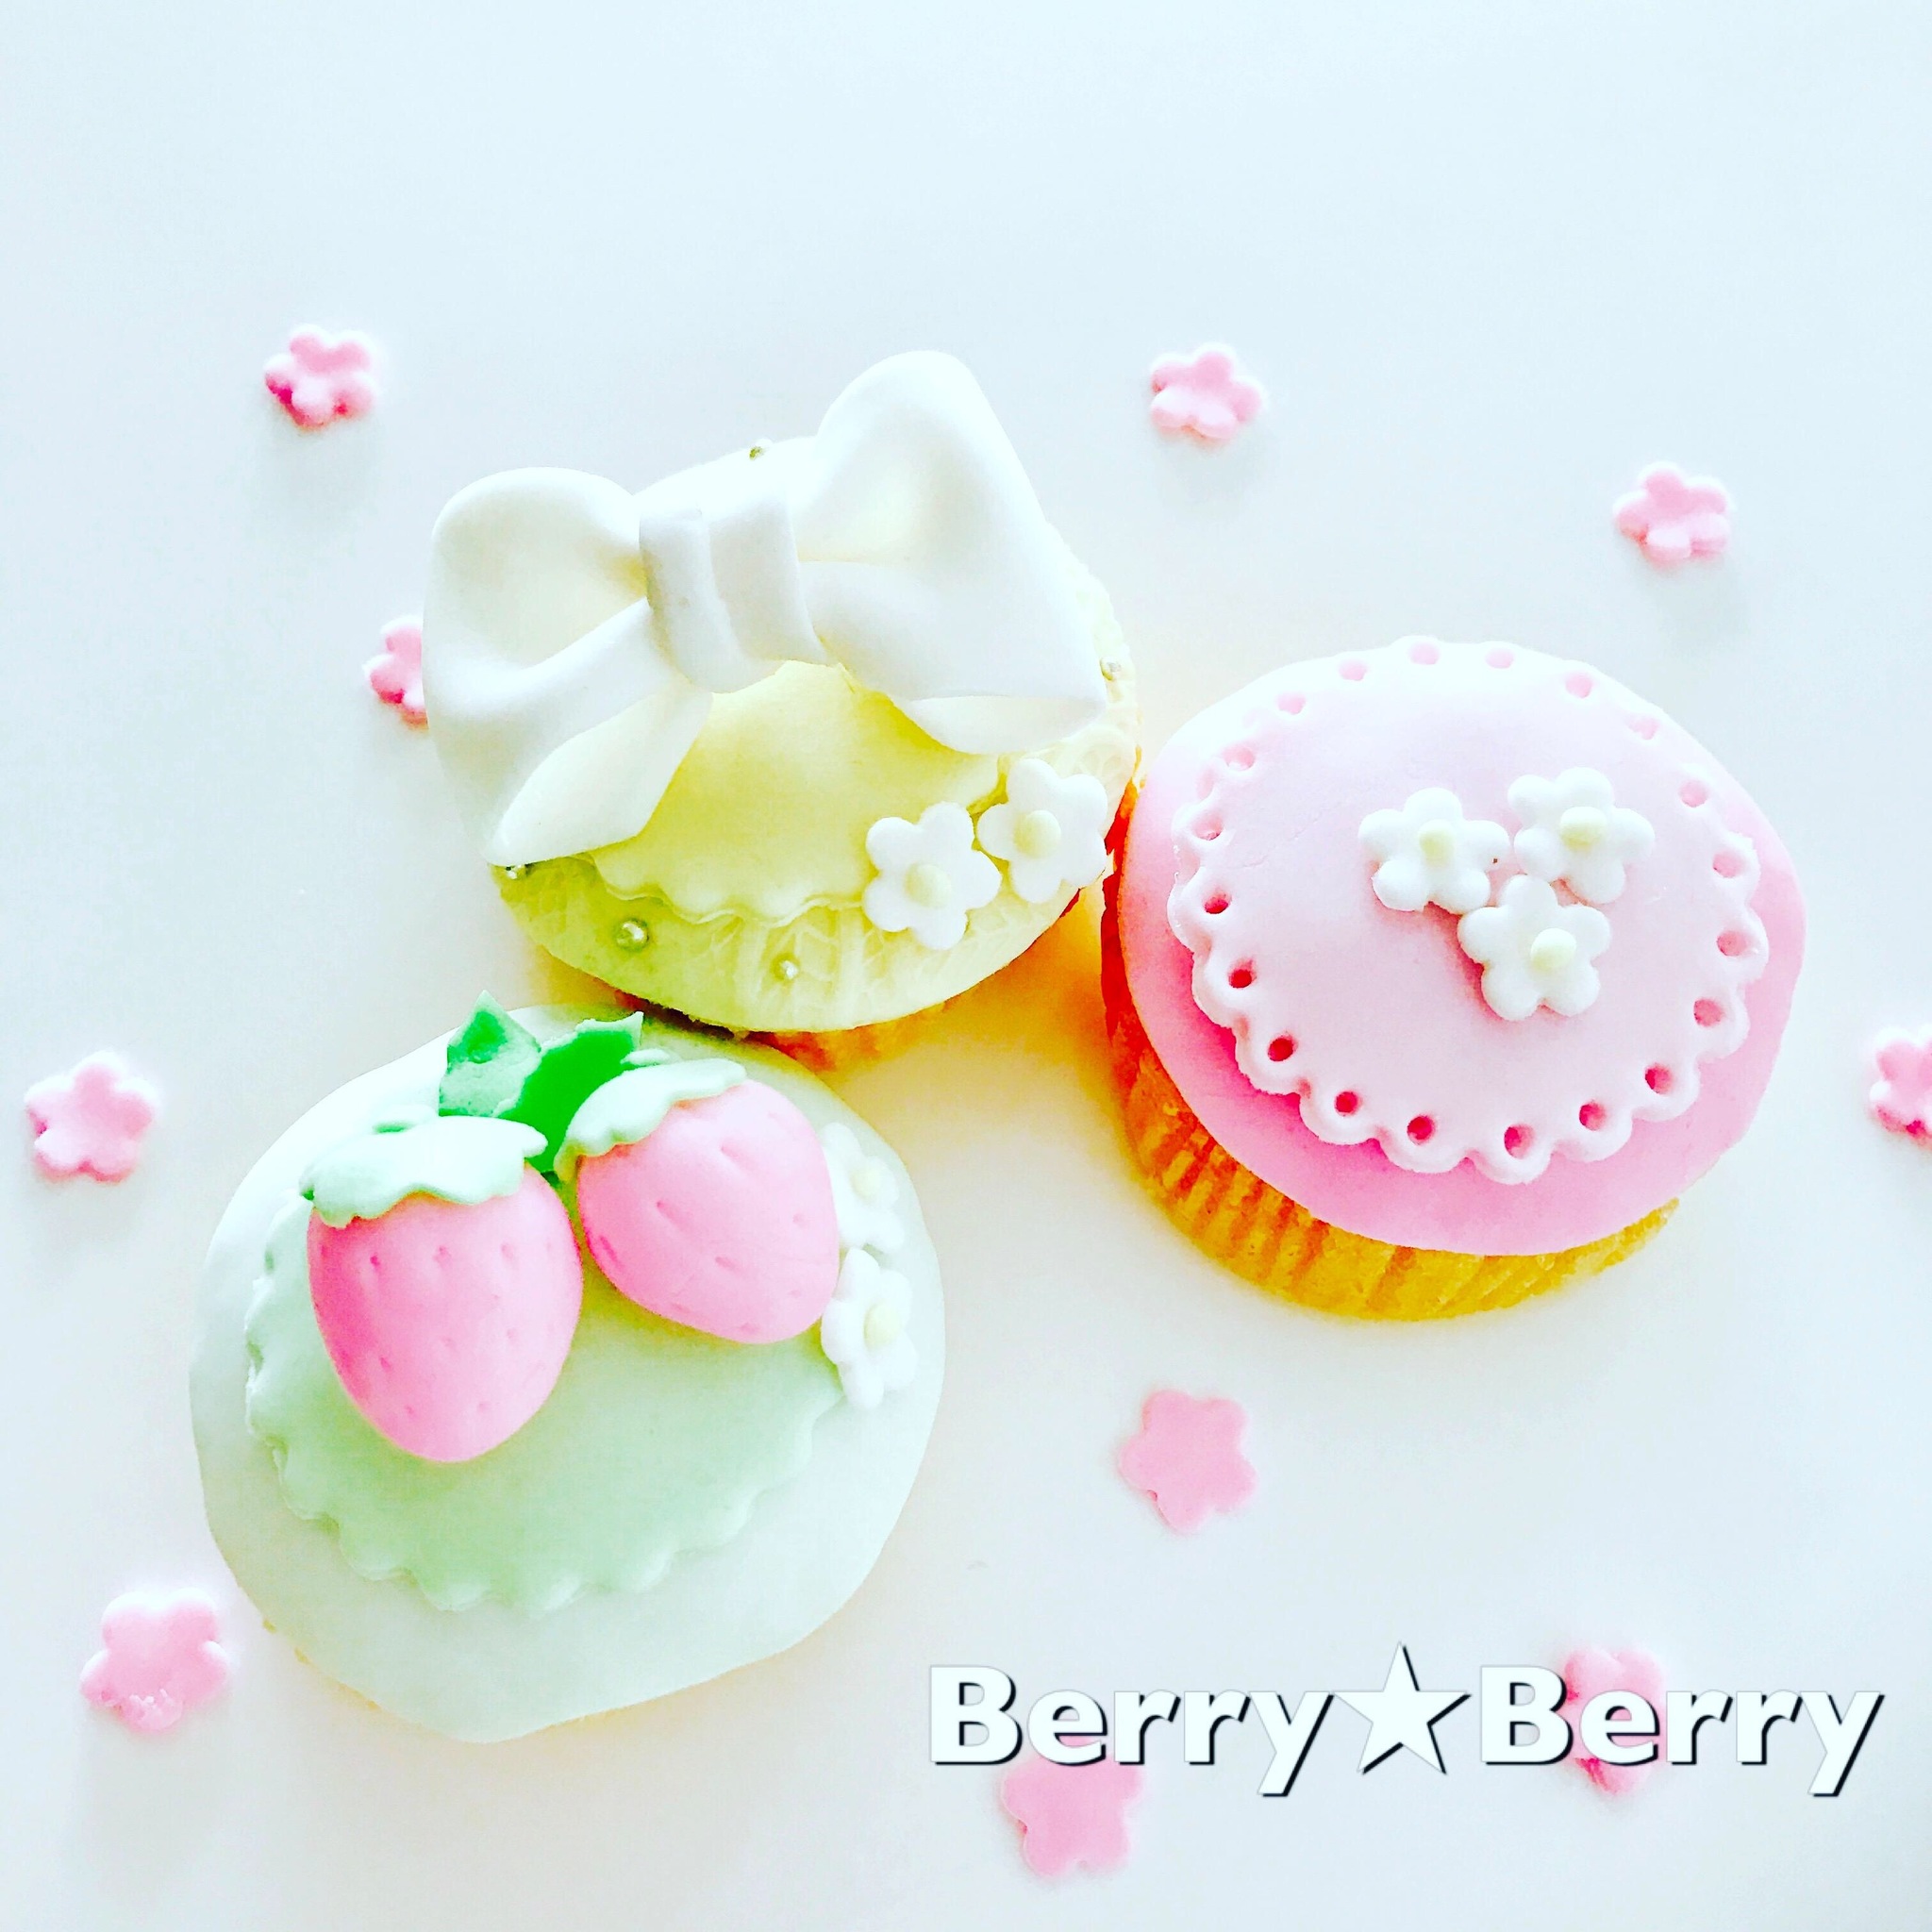 美味しいデコカップケーキ 開催 Berry Berry 福岡県久留米市 の21年3月レッスン情報 料理教室検索サイト クスパ